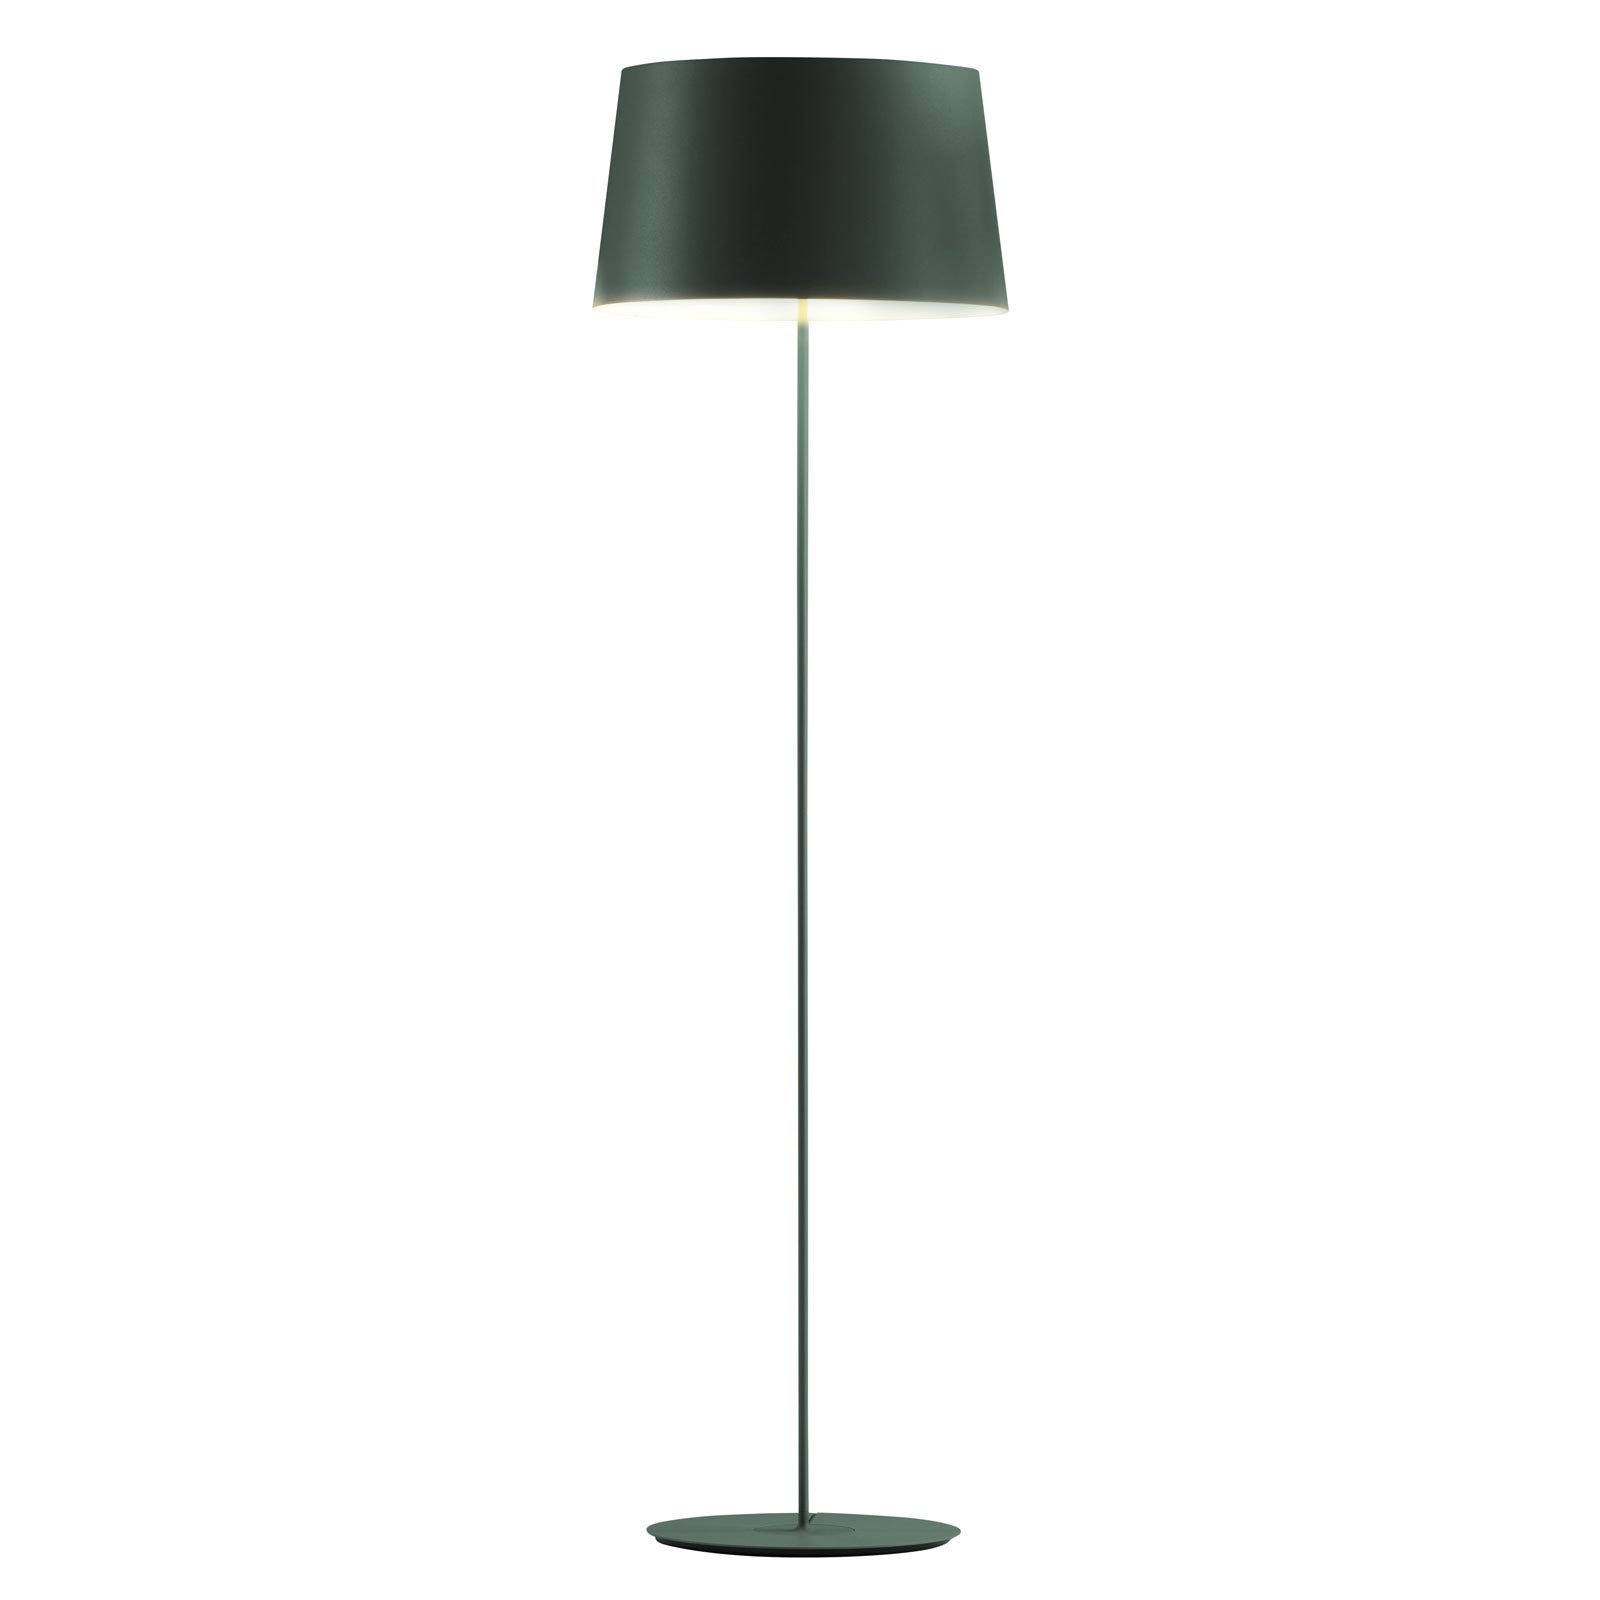 Vibia Warm 4906 lampadaire de designer, vert